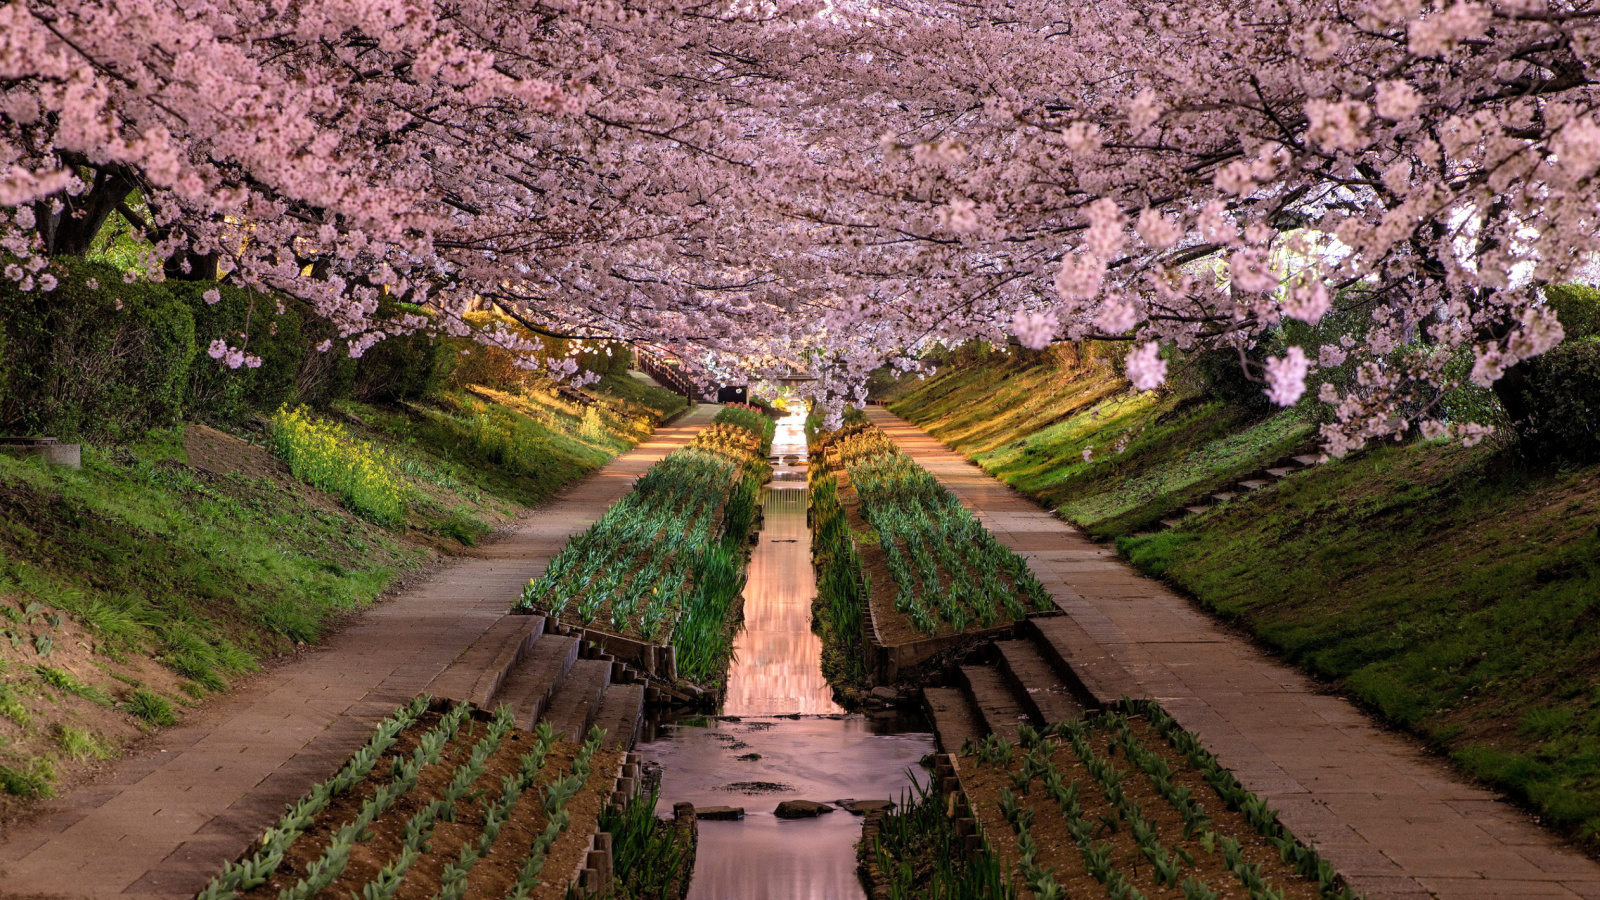 Обои Wisteria Flower Tunnel in Japan 1600x900